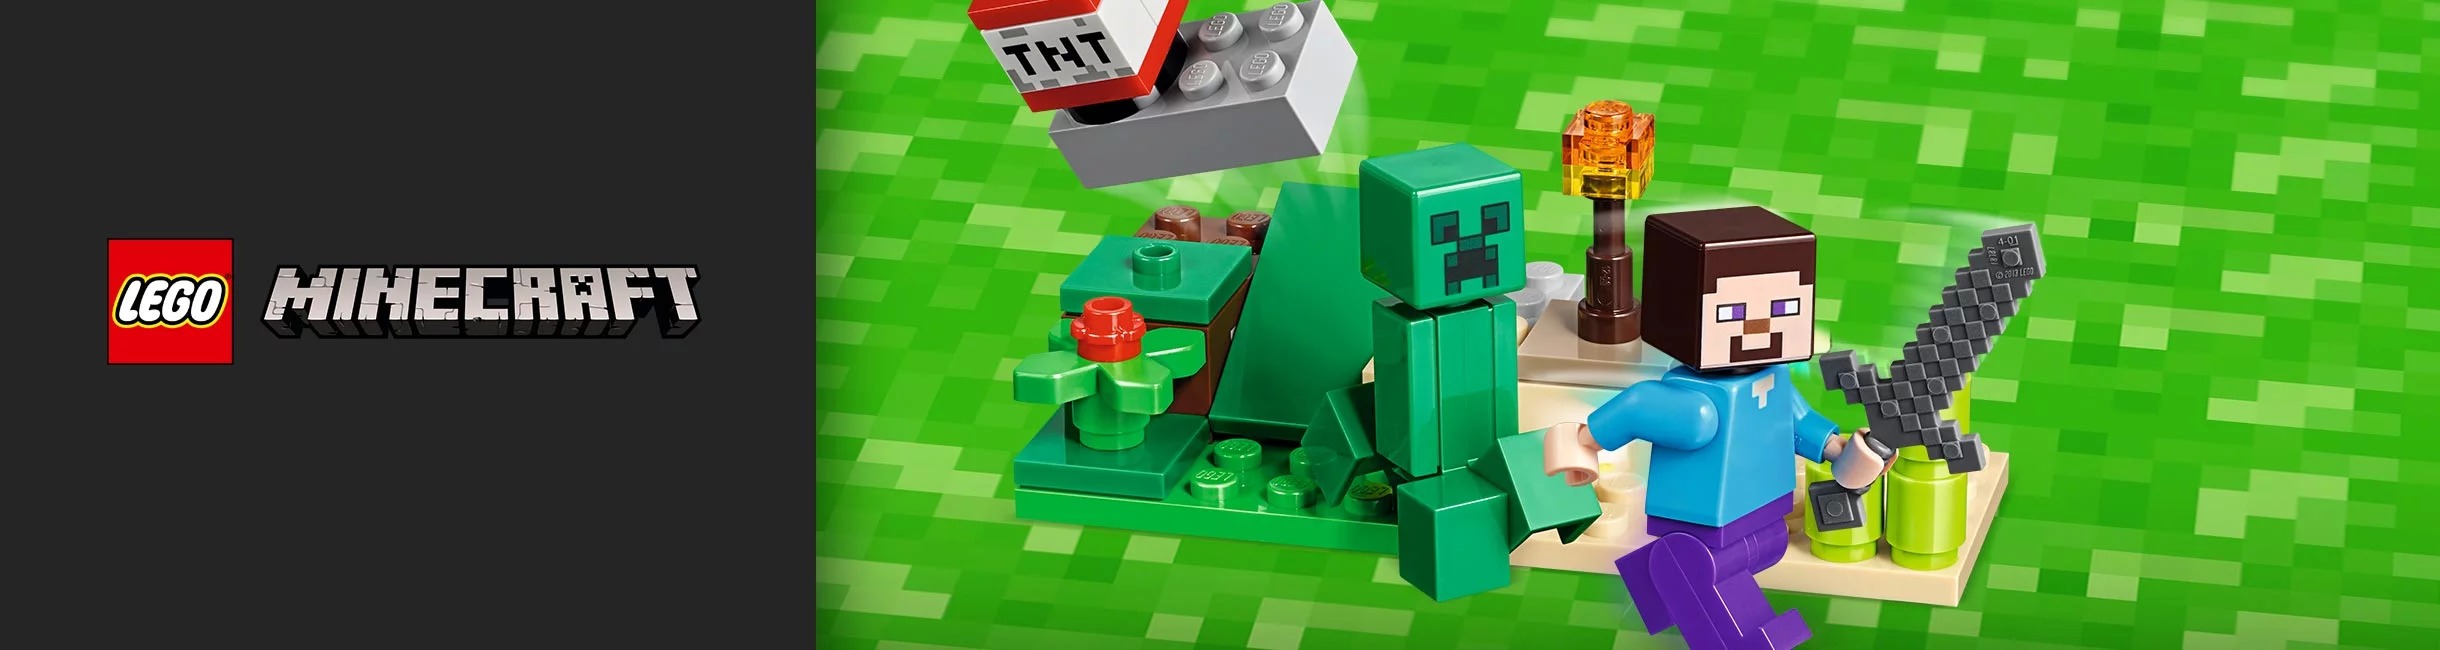 Рекламная акция Лего (LEGO) «Стив, осторожно! Крипер!»